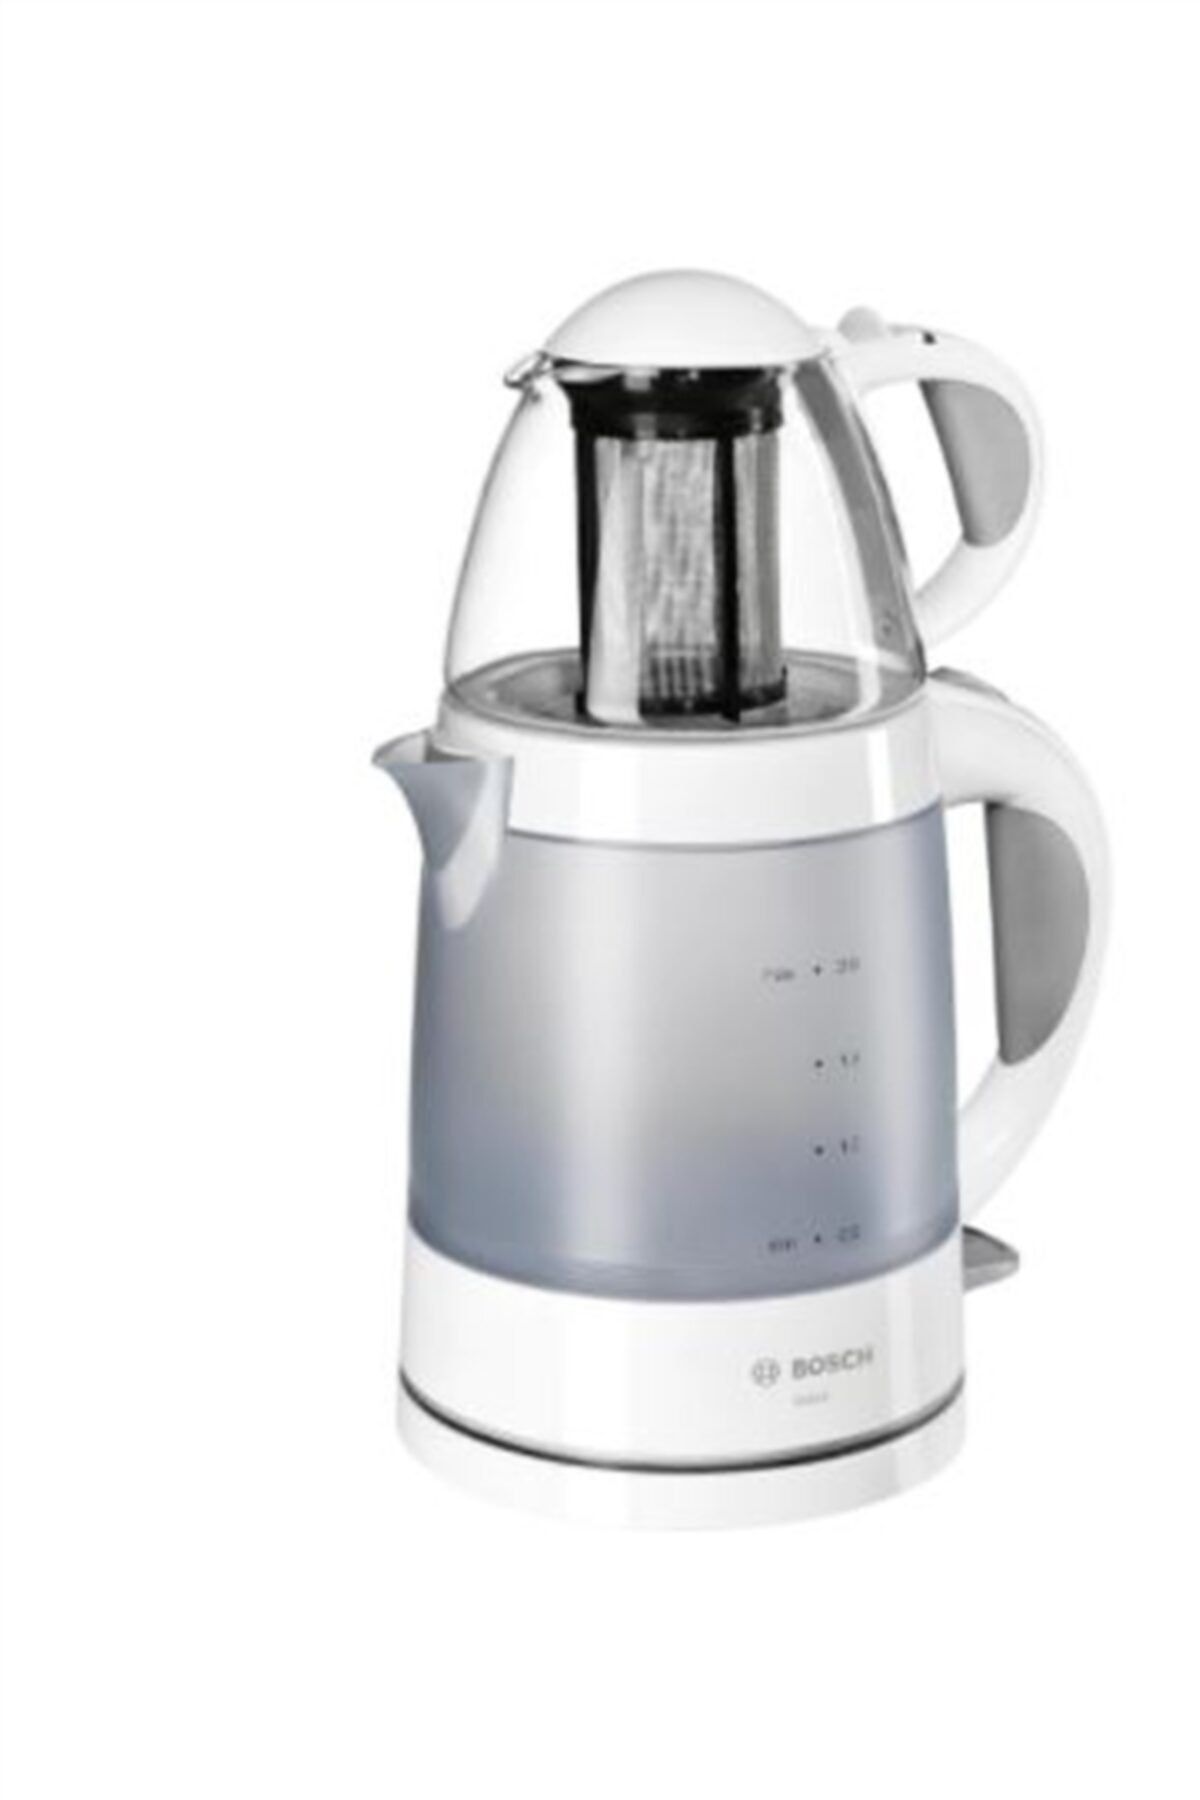 Bosch Tta2201 1785 W Cam Demlikli Beyaz Çay Makinesi